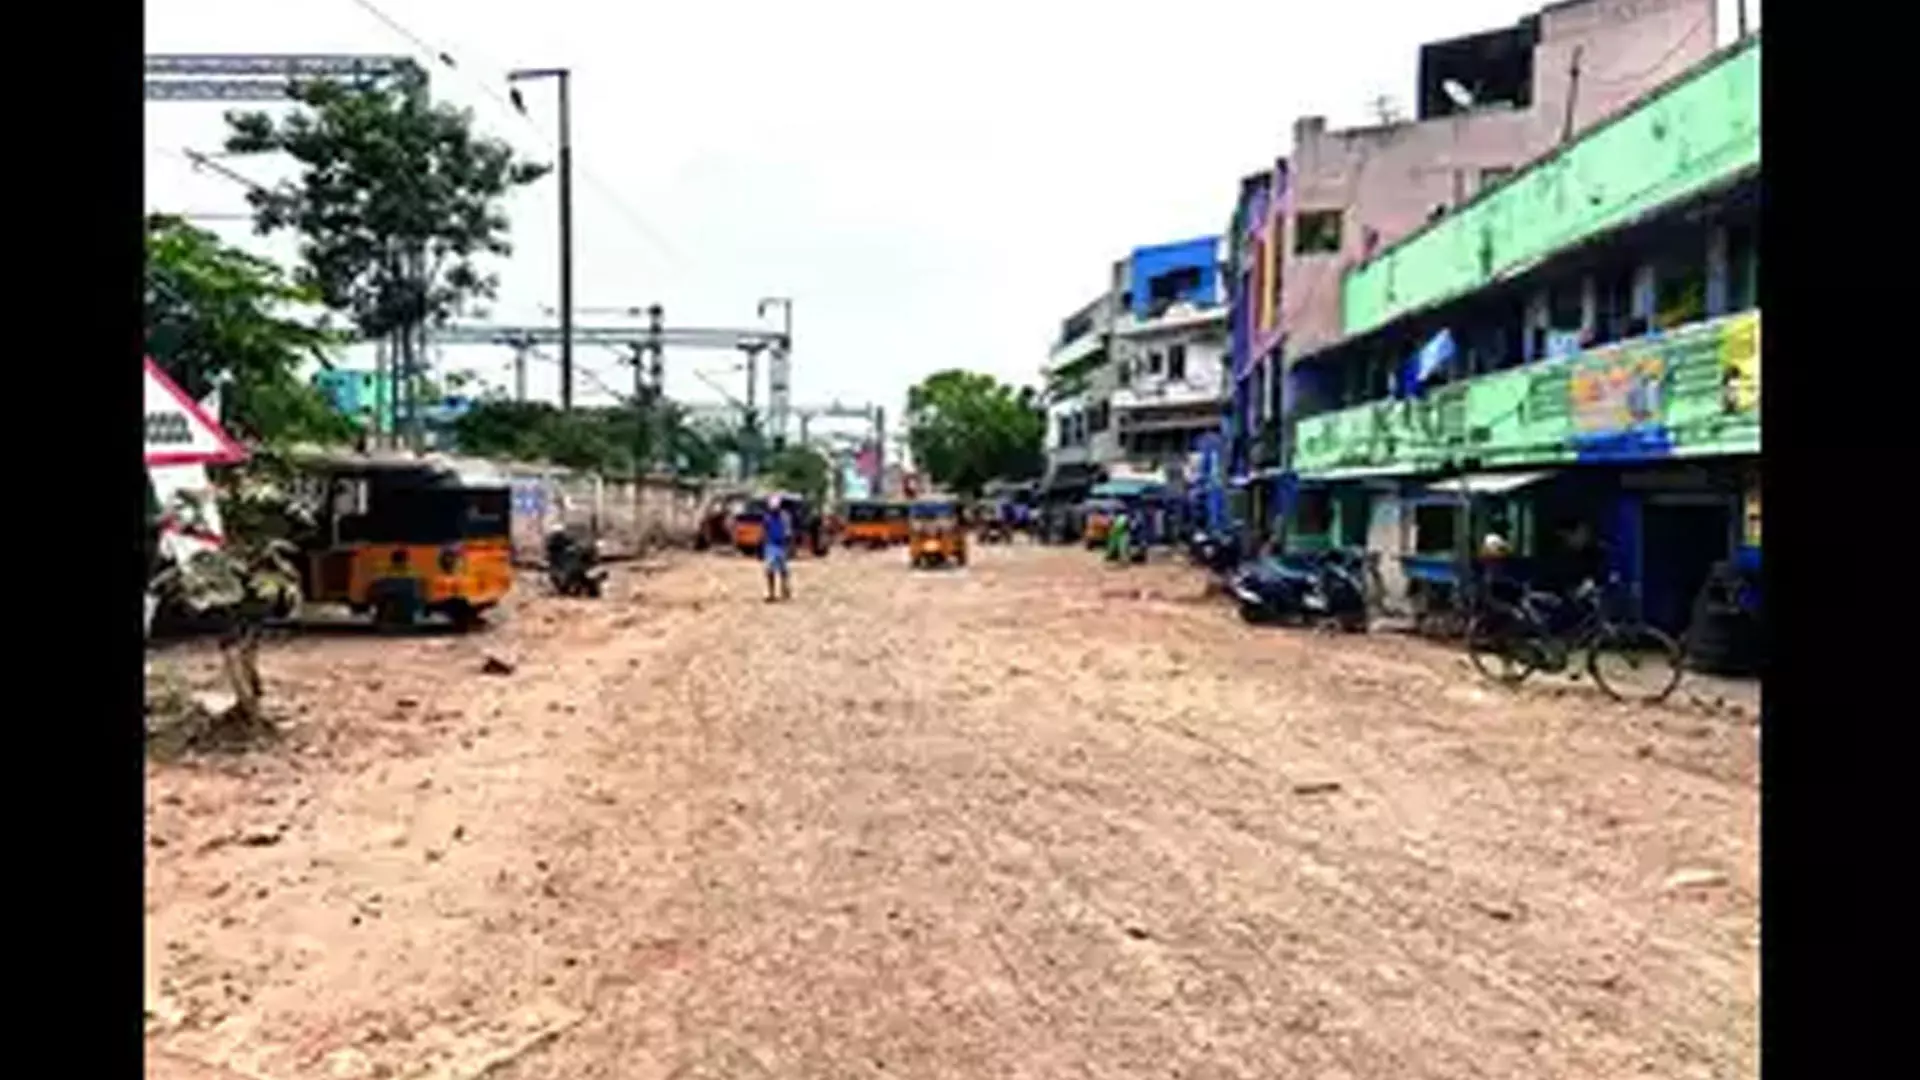 Chennai News: कोरुक्कुपेट और मिंट को जोड़ने वाली सड़क अव्यवस्थित